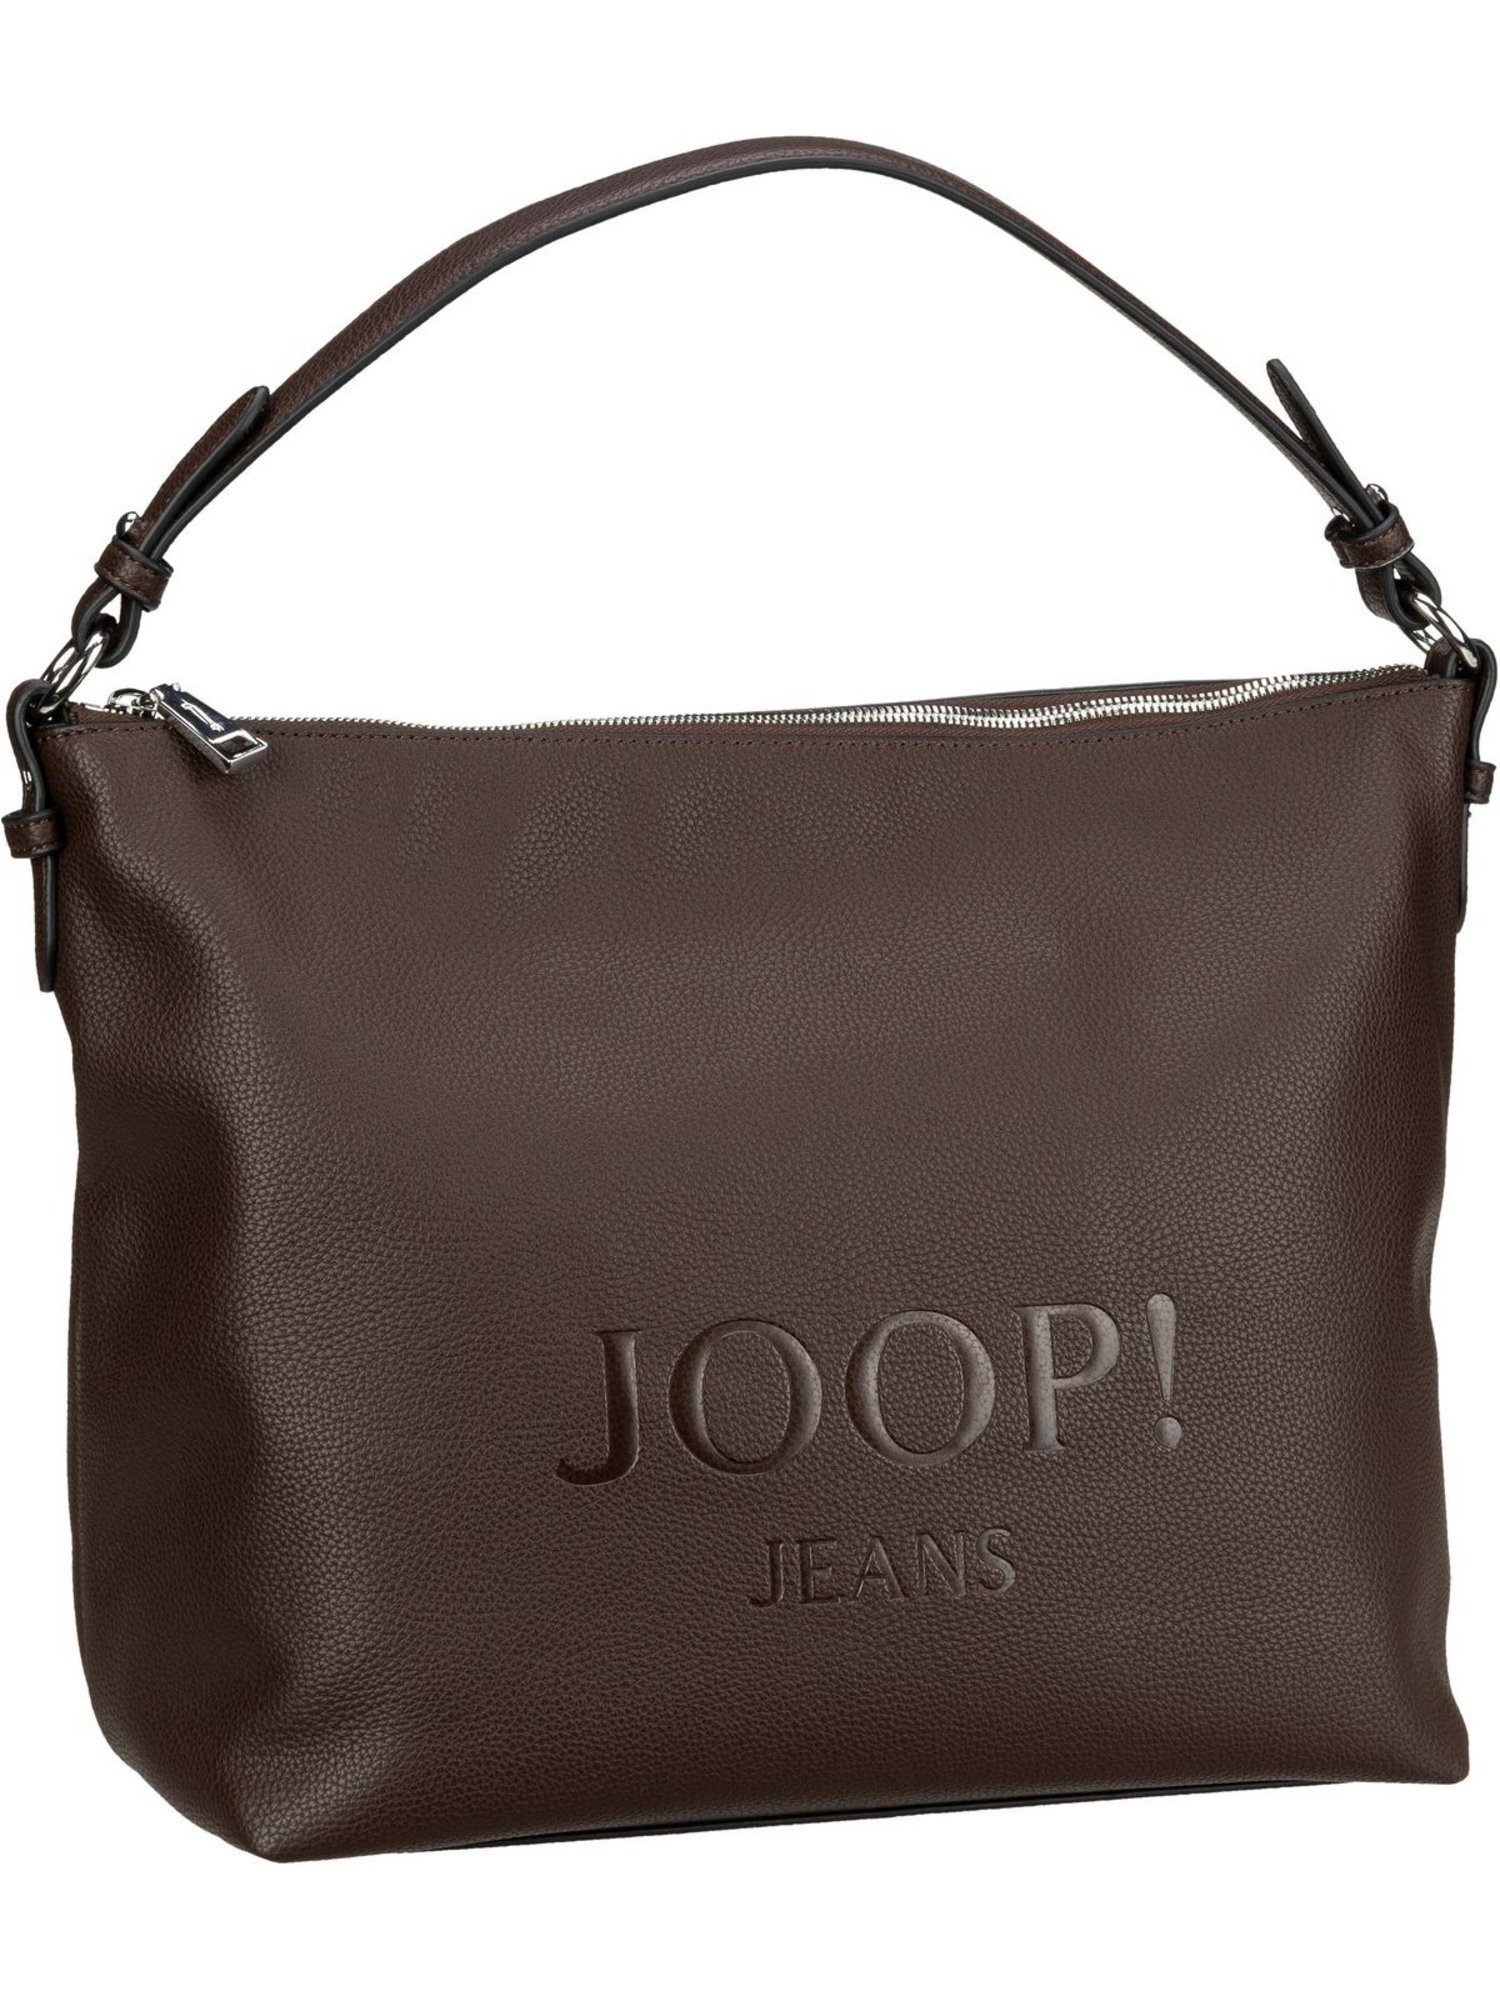 JOOP! Damentaschen online kaufen | OTTO